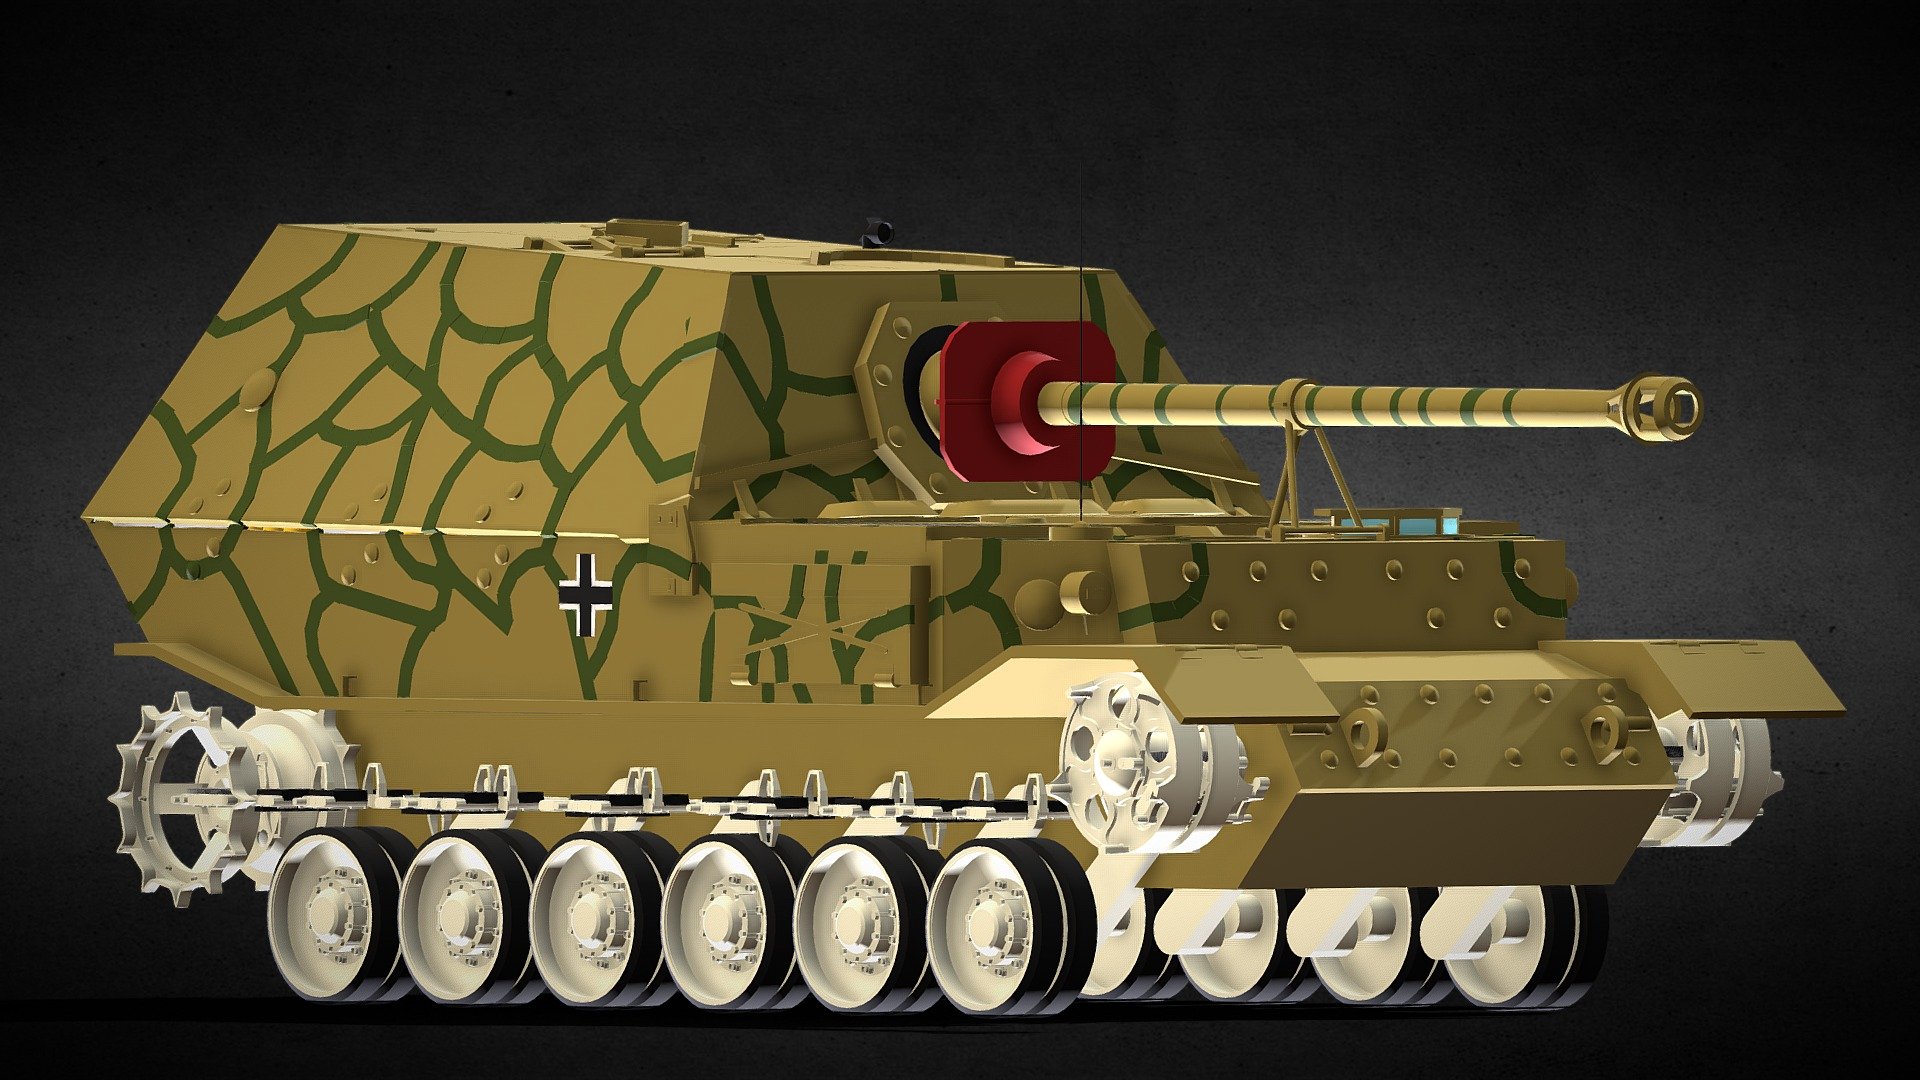 Panzerjäger Tiger (P) Ferdinand